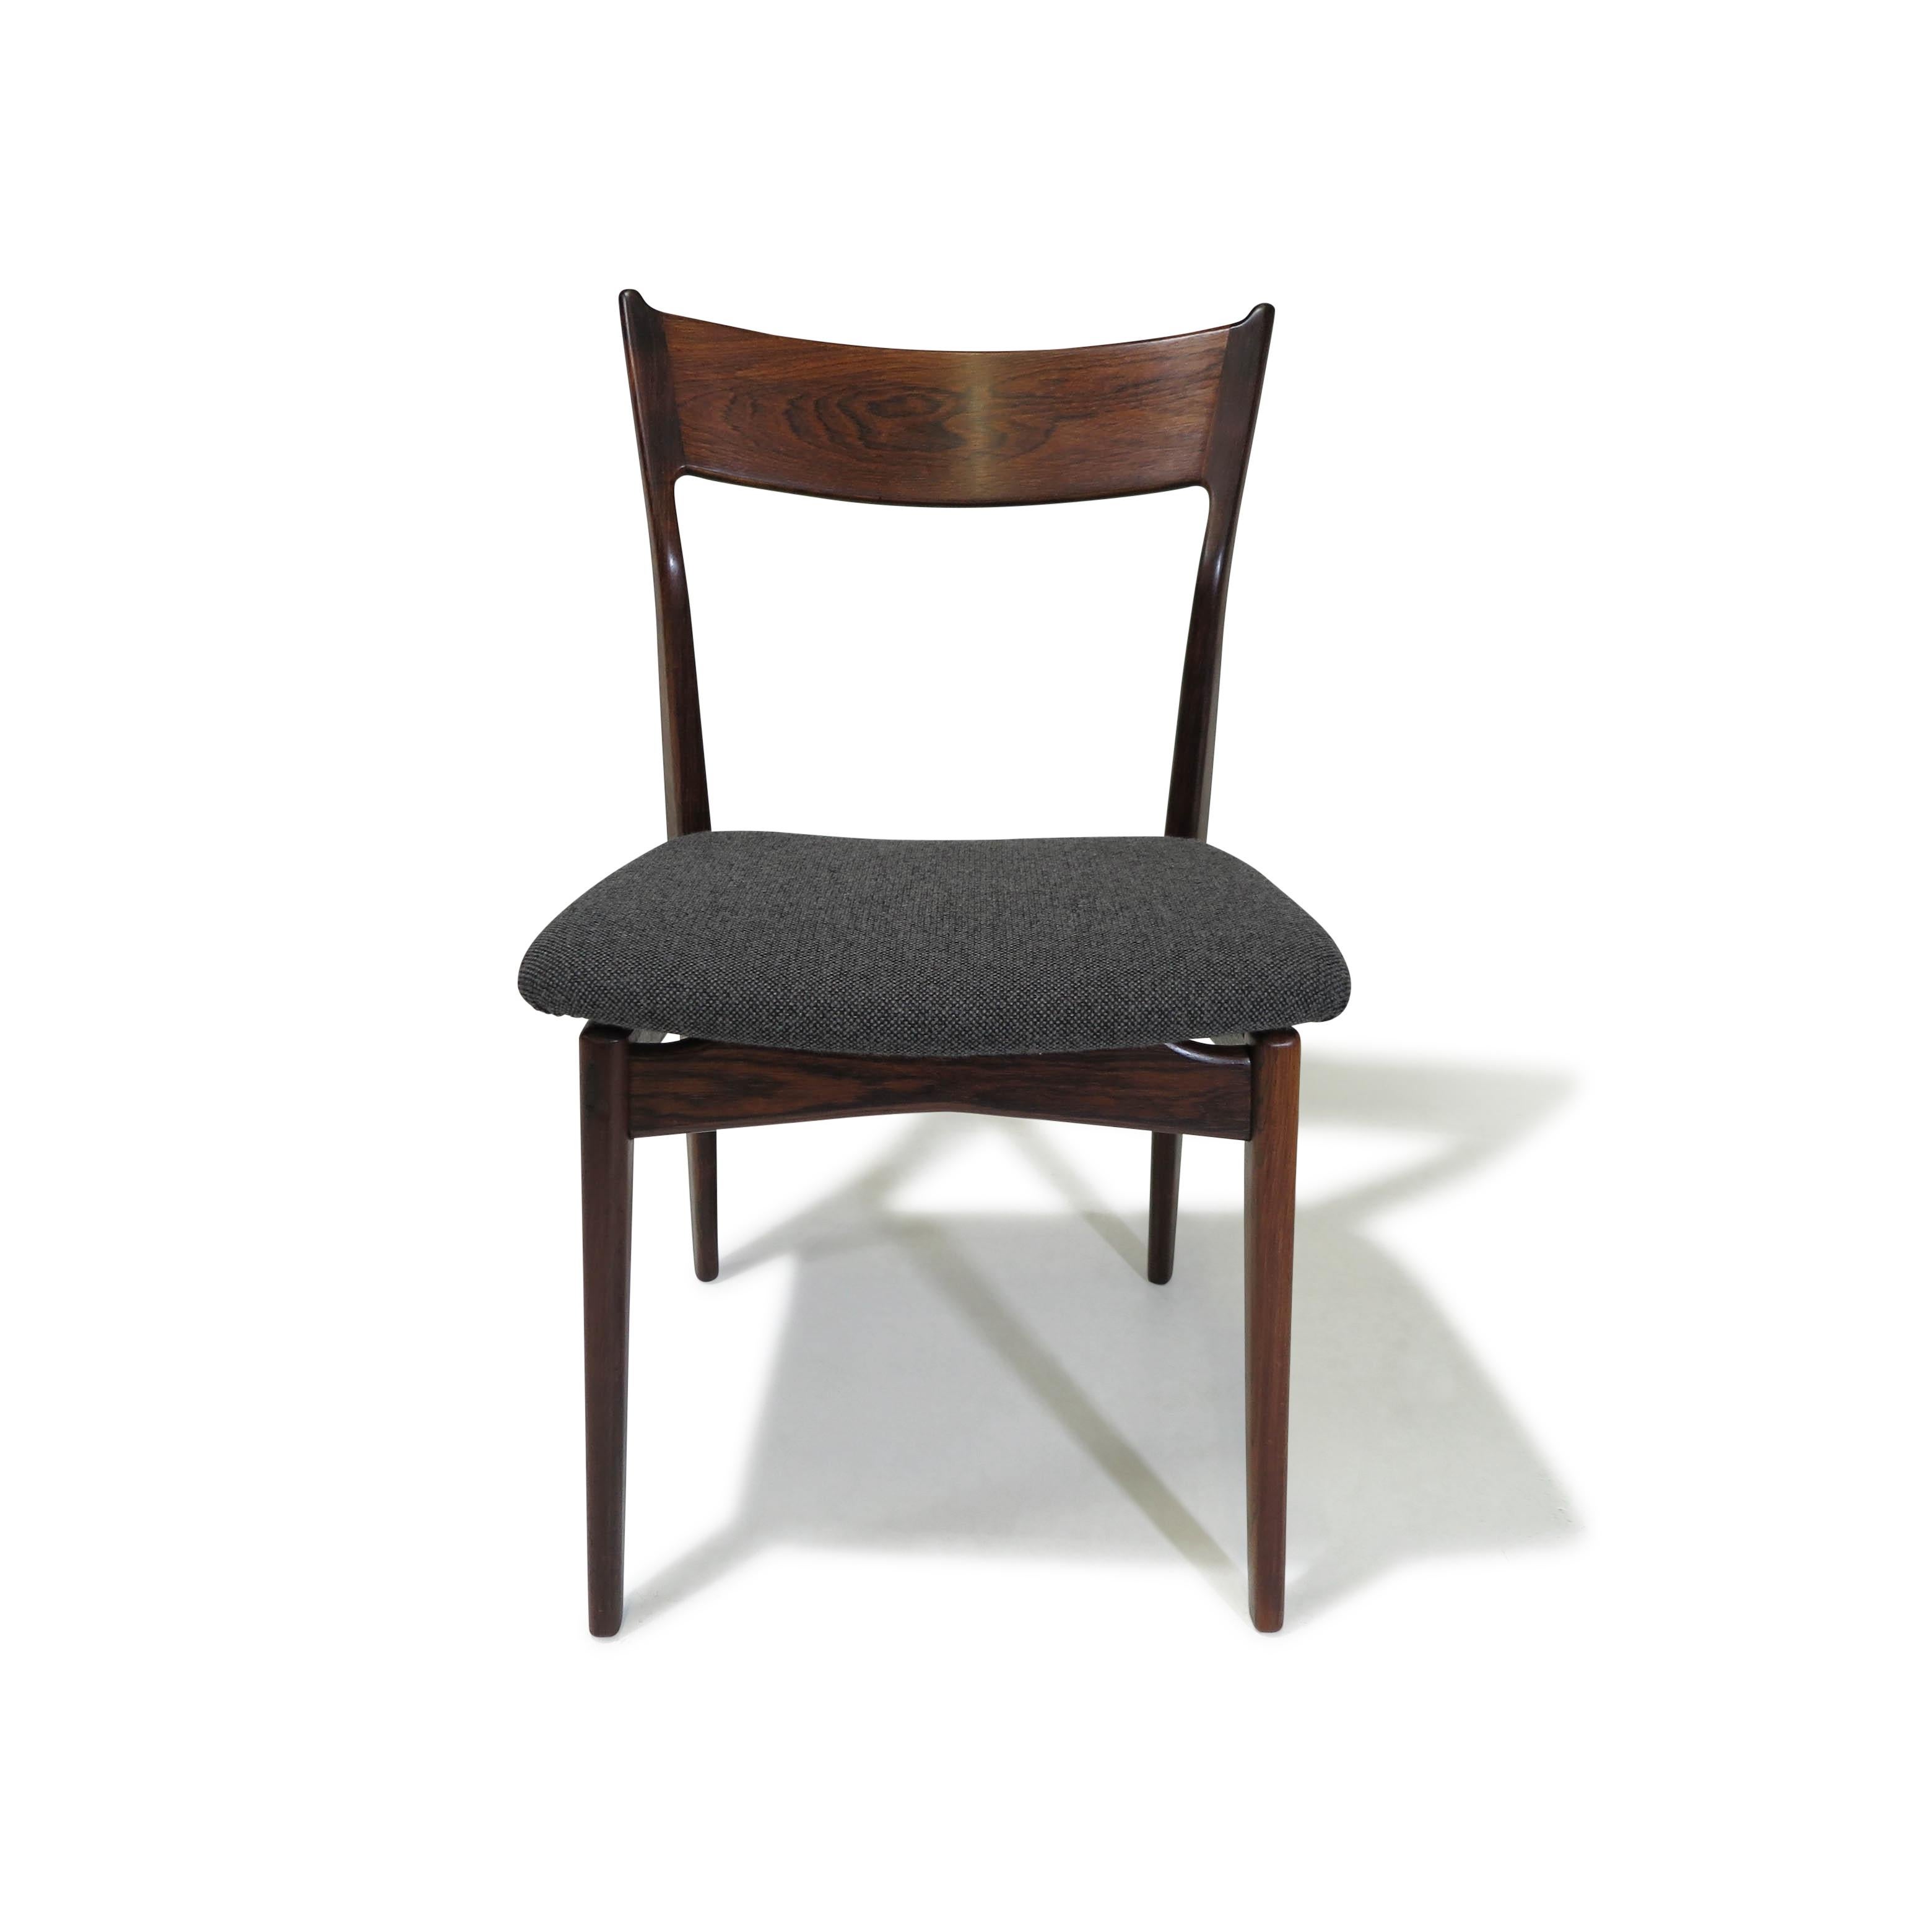 Esszimmerstühle aus brasilianischem Palisanderholz aus der Jahrhundertmitte, entworfen von H.P. Hansen für Randers Møbelfabrik. Diese aus massivem brasilianischem Palisanderholz handgefertigten Stühle verfügen über geschwungene Rückenlehnen. Die